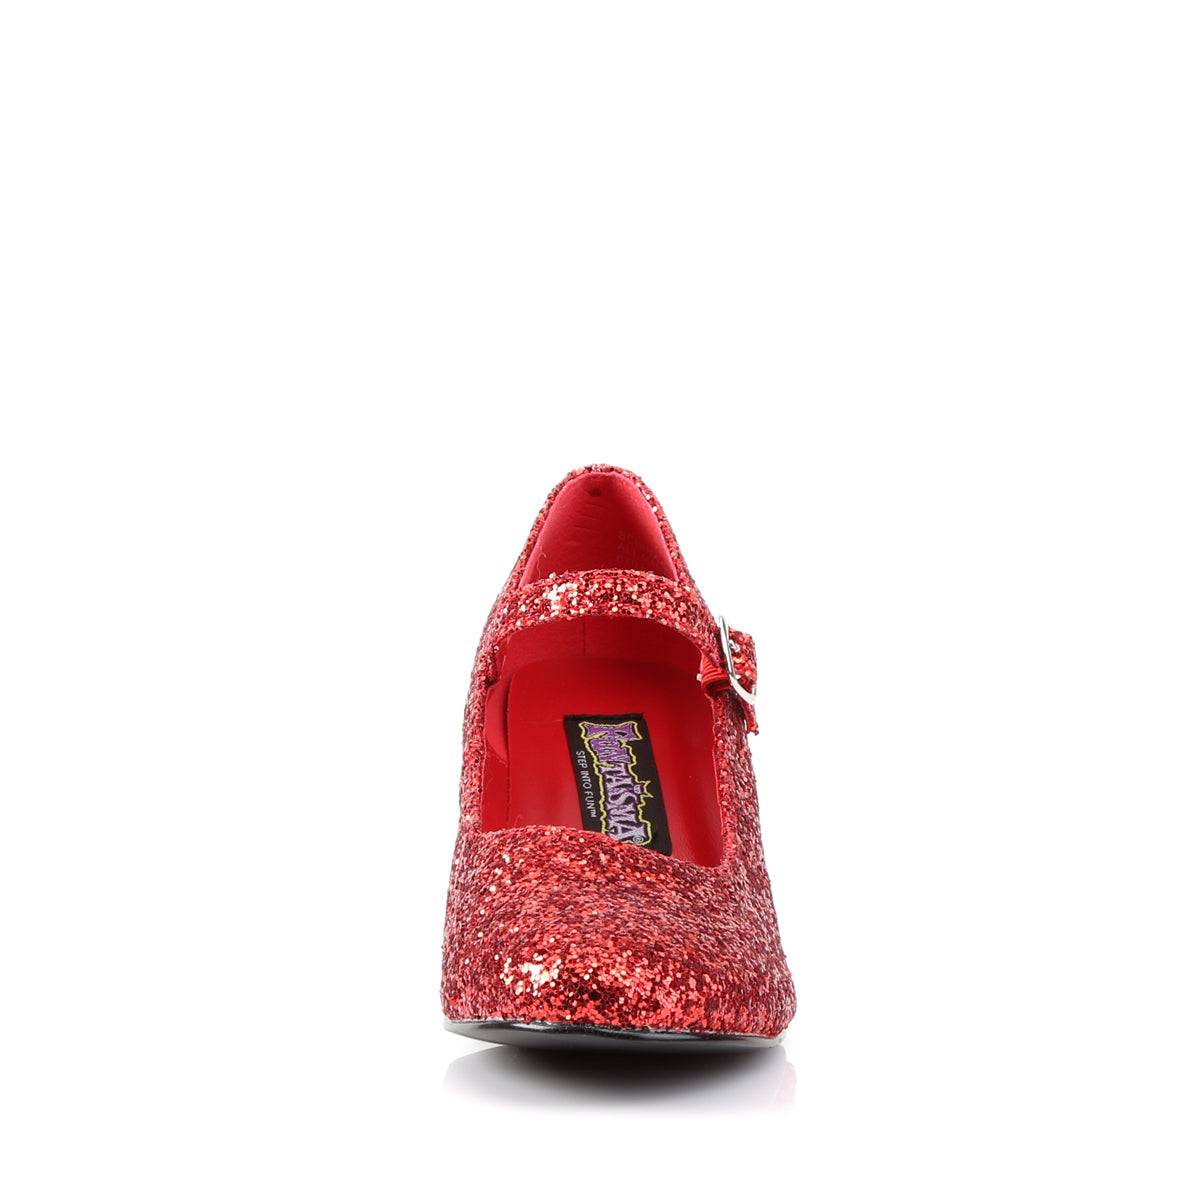 SCHOOLGIRL-50G Funtasma Fantasy Red Gltr Women's Shoes [Fancy Dress Footwear]